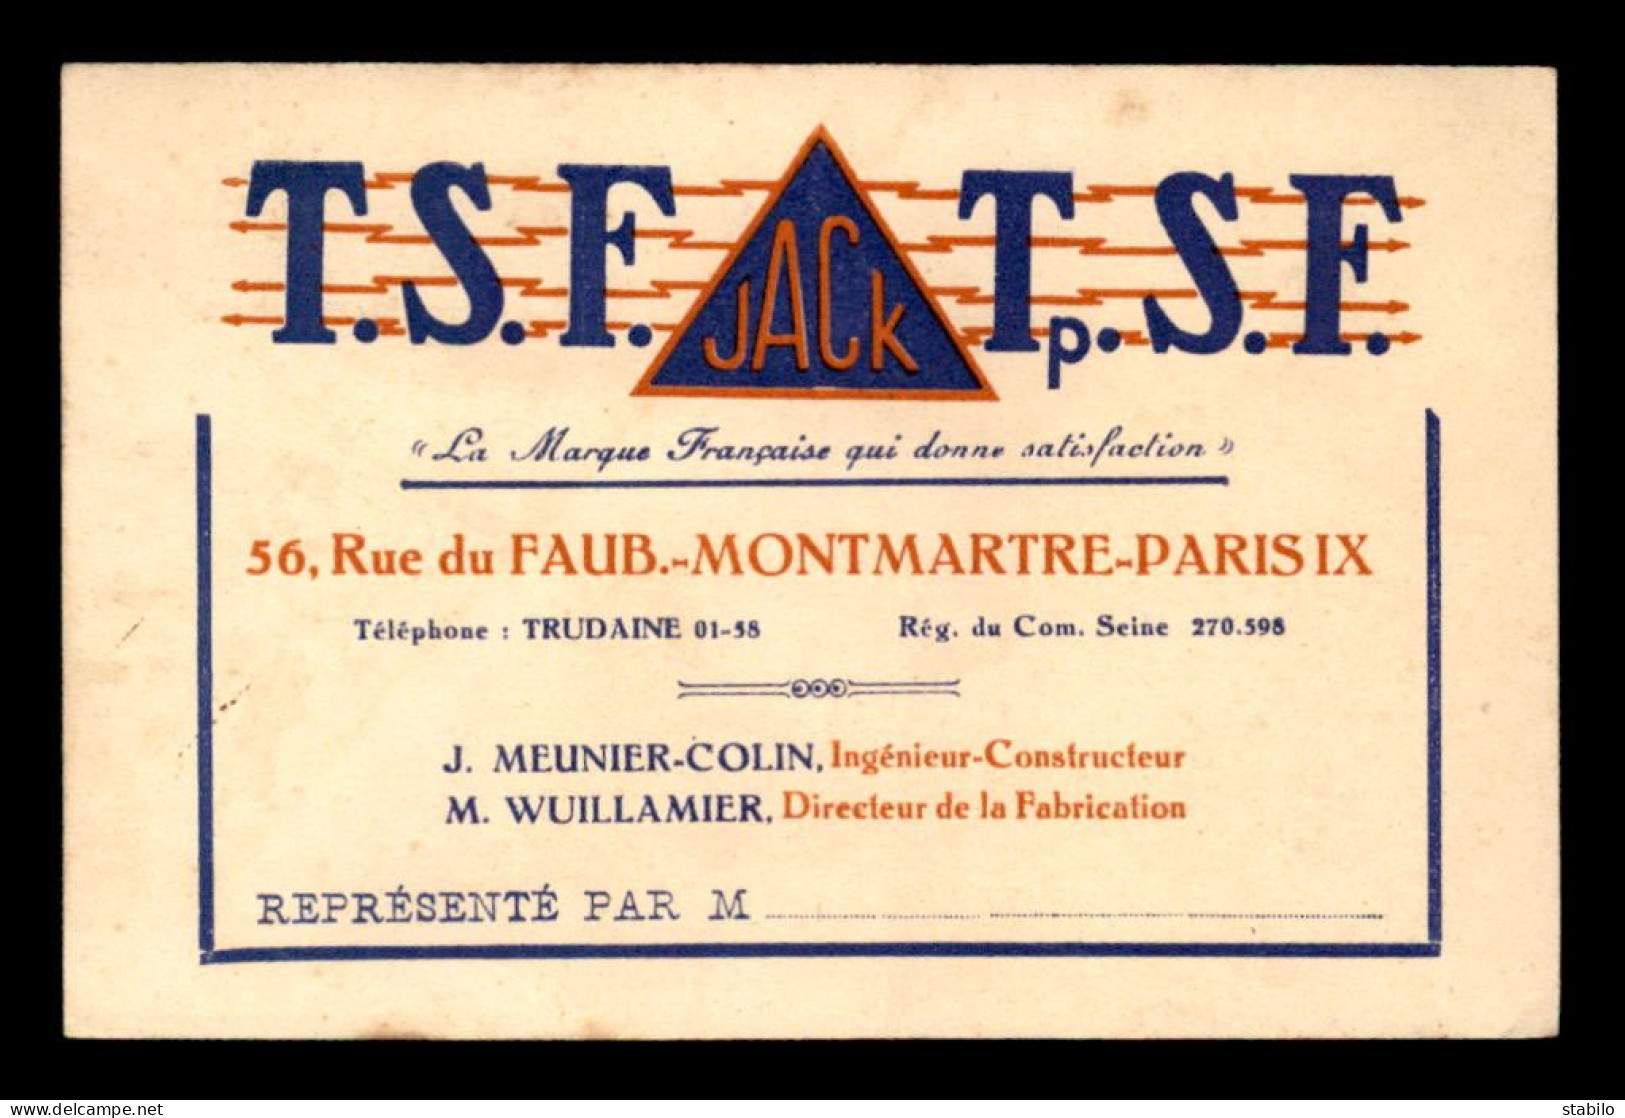 CARTE DE VISITE - T.S.F. JACK, 56 RUE DU FG MONTMARTRE PARIS 9EME - FORMAT 12 X 7.8 CM - Visitekaartjes